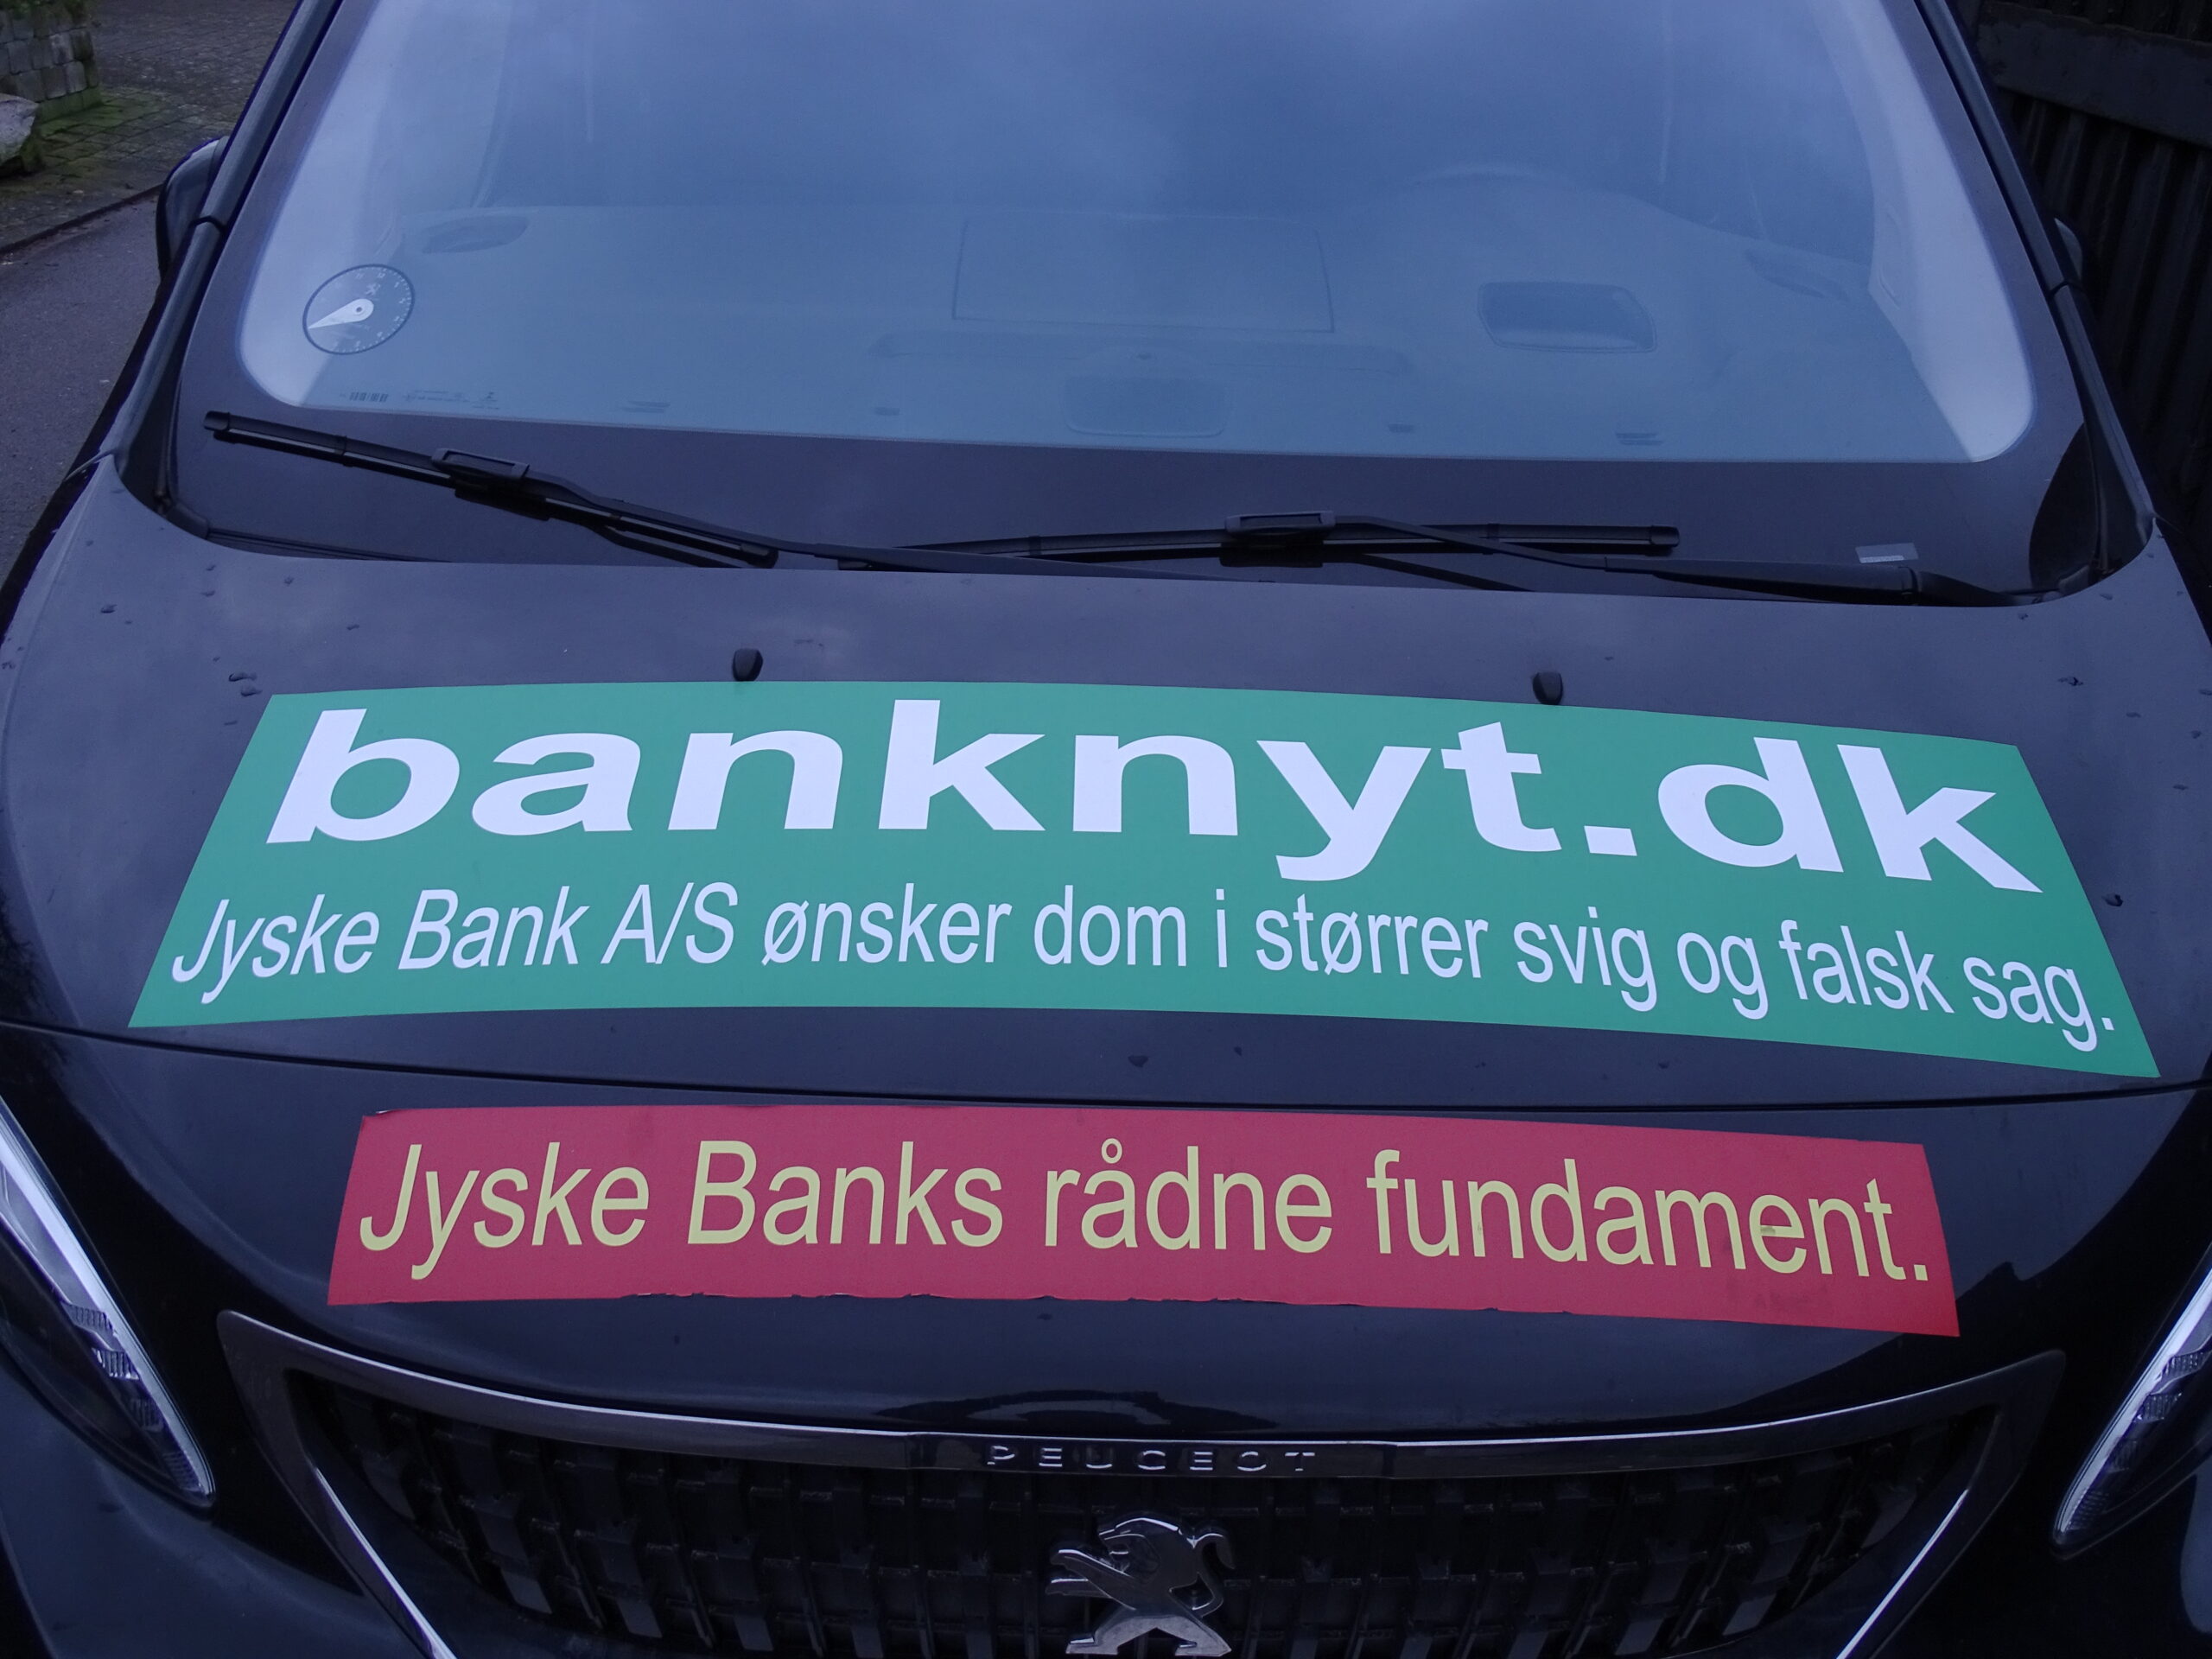 JYSKE BANK A/S HAR LAVET OG ELLER BRUGT. 1. Bedrageri. SVIG 2. Bondefangeri. 3. Dokument falsk. FALSK. 4. Vildledning. 5. Udnyttelse. 6. Lyver for kunde. 7. Vanhjemmel. 8. Bestikkelse / returkommission. Som da Jyske Bank Bestak Lundgrens advokater til at morarbejde den klient, som havde ansat Lundgrens til at fremlægge en sag om svig og falsk mod Jyske Bank A/S 9. Retsmisbrug. 10. Misbrugt adgang til Tinglysningsretten. 11. Fuldmagt misbrug. 12. Ond tro. 13. XXXXXXX. 14. Mandag svig. 15. Lyver overfor Penge Institut ankenævnet. 16. Lyver overfor domstolen. 17. Kan vel skrive MAGT MISBRUG, også. 18. Har taget overpant og sikkerheder for omkring 12 millioner, for en gæld på ca. 3 millioner, hvor der der givet pant i min ejendom på 3 millioner, et pantebrev Jyske Bank A/S iøvrigt ikke vil udlevere uden at stille krav, og det på trods af at jeg ikke skylder Jyske Bank noget som helst. 19. Nægter at udlevere de dokumenter hvori jeg private tidligere har givet Jyske Bank sikkerhed og kaution for selskabet, der har stævnet Jyske Bank for svig. 20. Nægter kunden at tage advokat forbehold, og spærre derfor alle kundens konti, for ikke at påføre et advokat forbehold, på de 2 salgsfuldmagter Jyske Bank ved Birgit Buch Thuesen tvang Carsten Storbjerg til at underskrive. Hvis Jyske Bank A/S ved deres mange medhjælpere og bagmænd, intet af ovenstående har lavet, så skal Jyske Bank og deres medvirkende advokater samt CEO Anders Christian Dam da bare komme til mig, og i må da gerne beskylde mig for injurier og bagvaskelse af Jyske Bank A/S. Jeg har fremlagt beviser for mine påstande. Og anklager stadig Jyske Bank for at stå bag omfattende kriminalitet mod min virksomhed. Hvis det ikke er sandt så anmeld mig da til politiet. I min mail 7 maj. til Jyske Bank A/S oplysninger jeg da også, at min opfordring og mail er delt med politiet. Hvis Jyske Bank og Lund Elmer Sandager advokater ikke mener jeg har bevis for at Nicolai Hansen og Jeanett Kofoed Hansen, med Lars Aaqvist efterfulgt af hjælp fra mindst Anette Kirkeby, Casper Dam Olsen og advokat Morten Ulrik Gade med Lund Elmer Sandager advokater og deres partner Philip Baruch, samme i forening står bag Jyske Banks omfattende og organiseret kriminalitet mod min virksomhed, så ring til politiet, og bed dem om at efterforske mine anklager mod Jyske Bank. Kære Anders Dam, skal jeg komme over og tage dig i hånden og følge med op til politistationen, så kan du politi anmelde mig for injurier og bagvaskelse af Jyske bank hvis du og dine advokater ellers tør. Men hvis du Anders Dam er bange for at Jyske Bank mister retten til at drive bank vi Danmark, hvis politiet efterforsker kundens beviser for Jyske banks brug af kriminel virksomhed, så skal du Anders Dam ikke sige noget. Læs mere på BANKNYT om den kriminelle Jyske Bank. https://www.google.com/search?q=banknyt.dk+Nicolai+Hansen,+Casper+Dam+Olsen,+Anette+Kirkeby&source=lmns&bih=714&biw=1536&hl=da&sa=X&ved=2ahUKEwicpPKjq-33AhUBgosKHf4IDvoQ_AUoAHoECAEQAA @DamAnders @AndersDam #JyskeBank #Bank #politi #Lundgrens #DanTerkildsen #LES #LundElmerSandager #PhilipBaruch